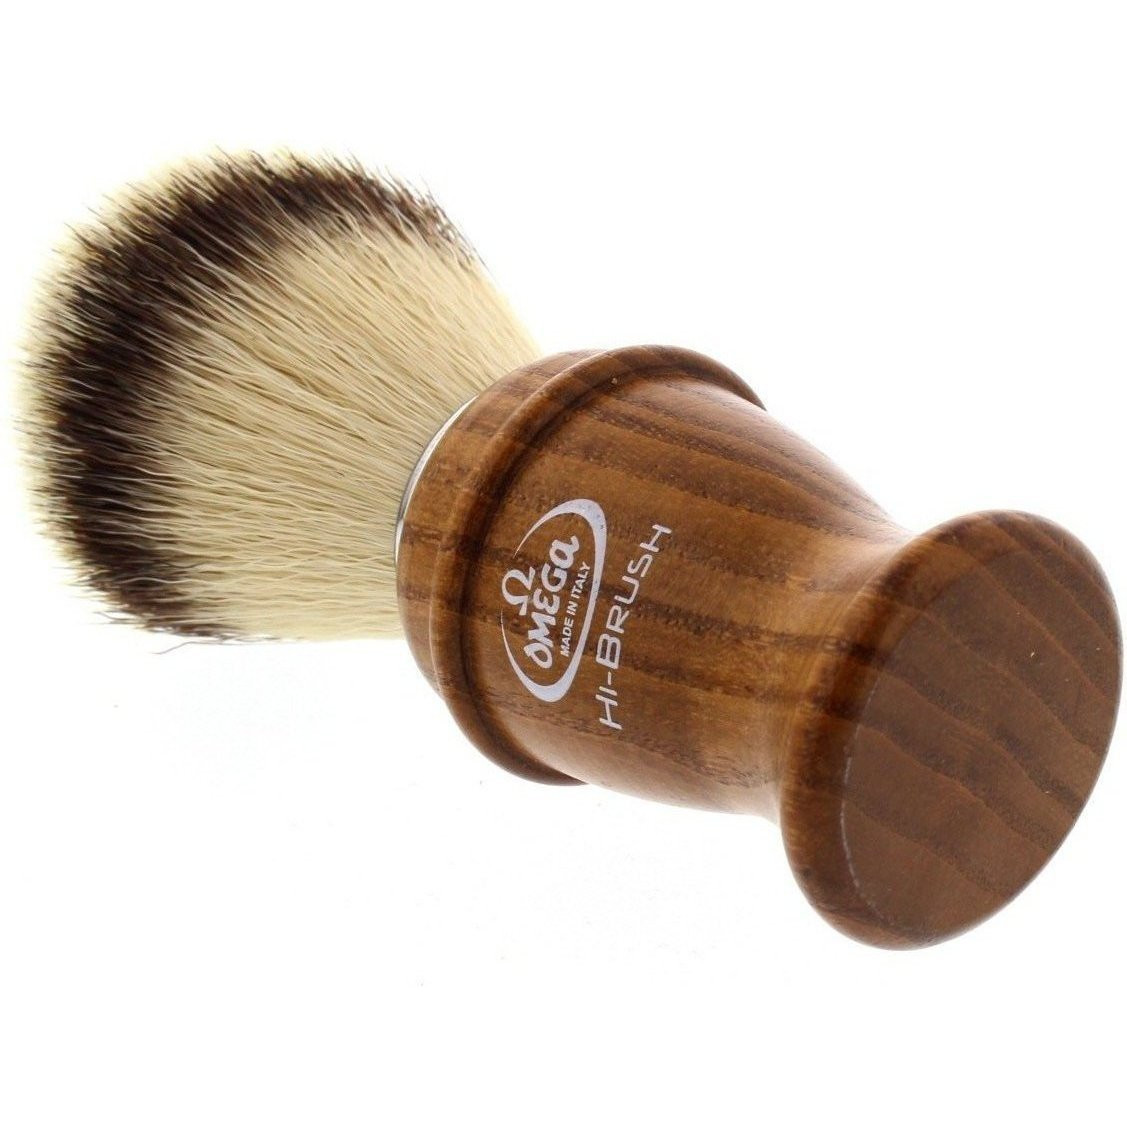 Product image 3 for Omega 0146138 HI-BRUSH Synthetic Shaving Brush